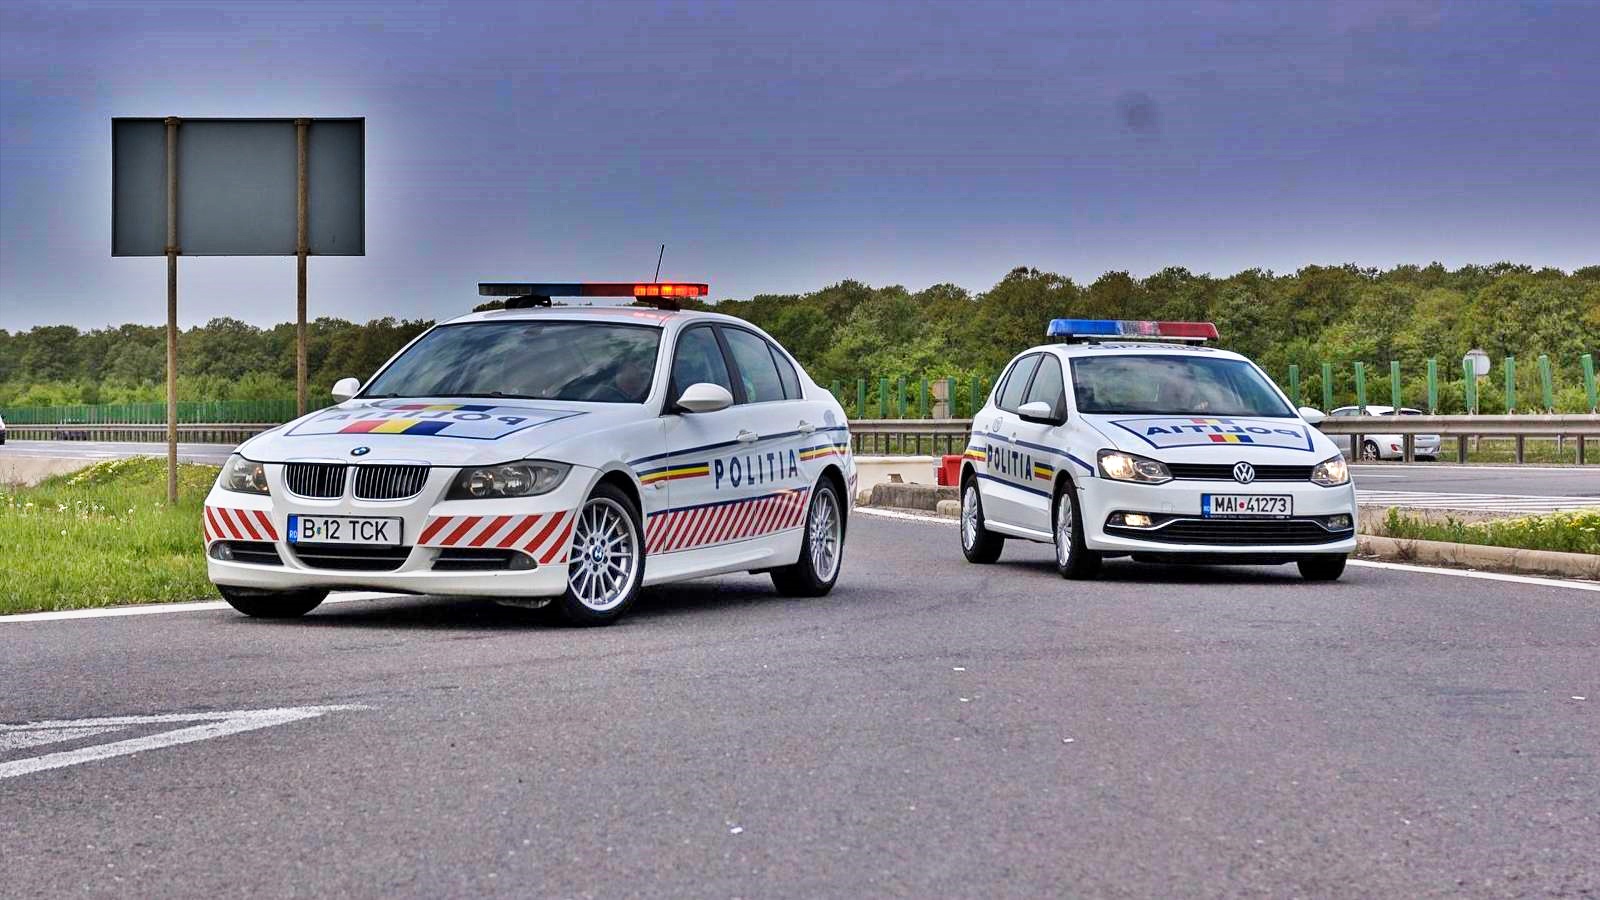 Rumänsk polis radarpistol